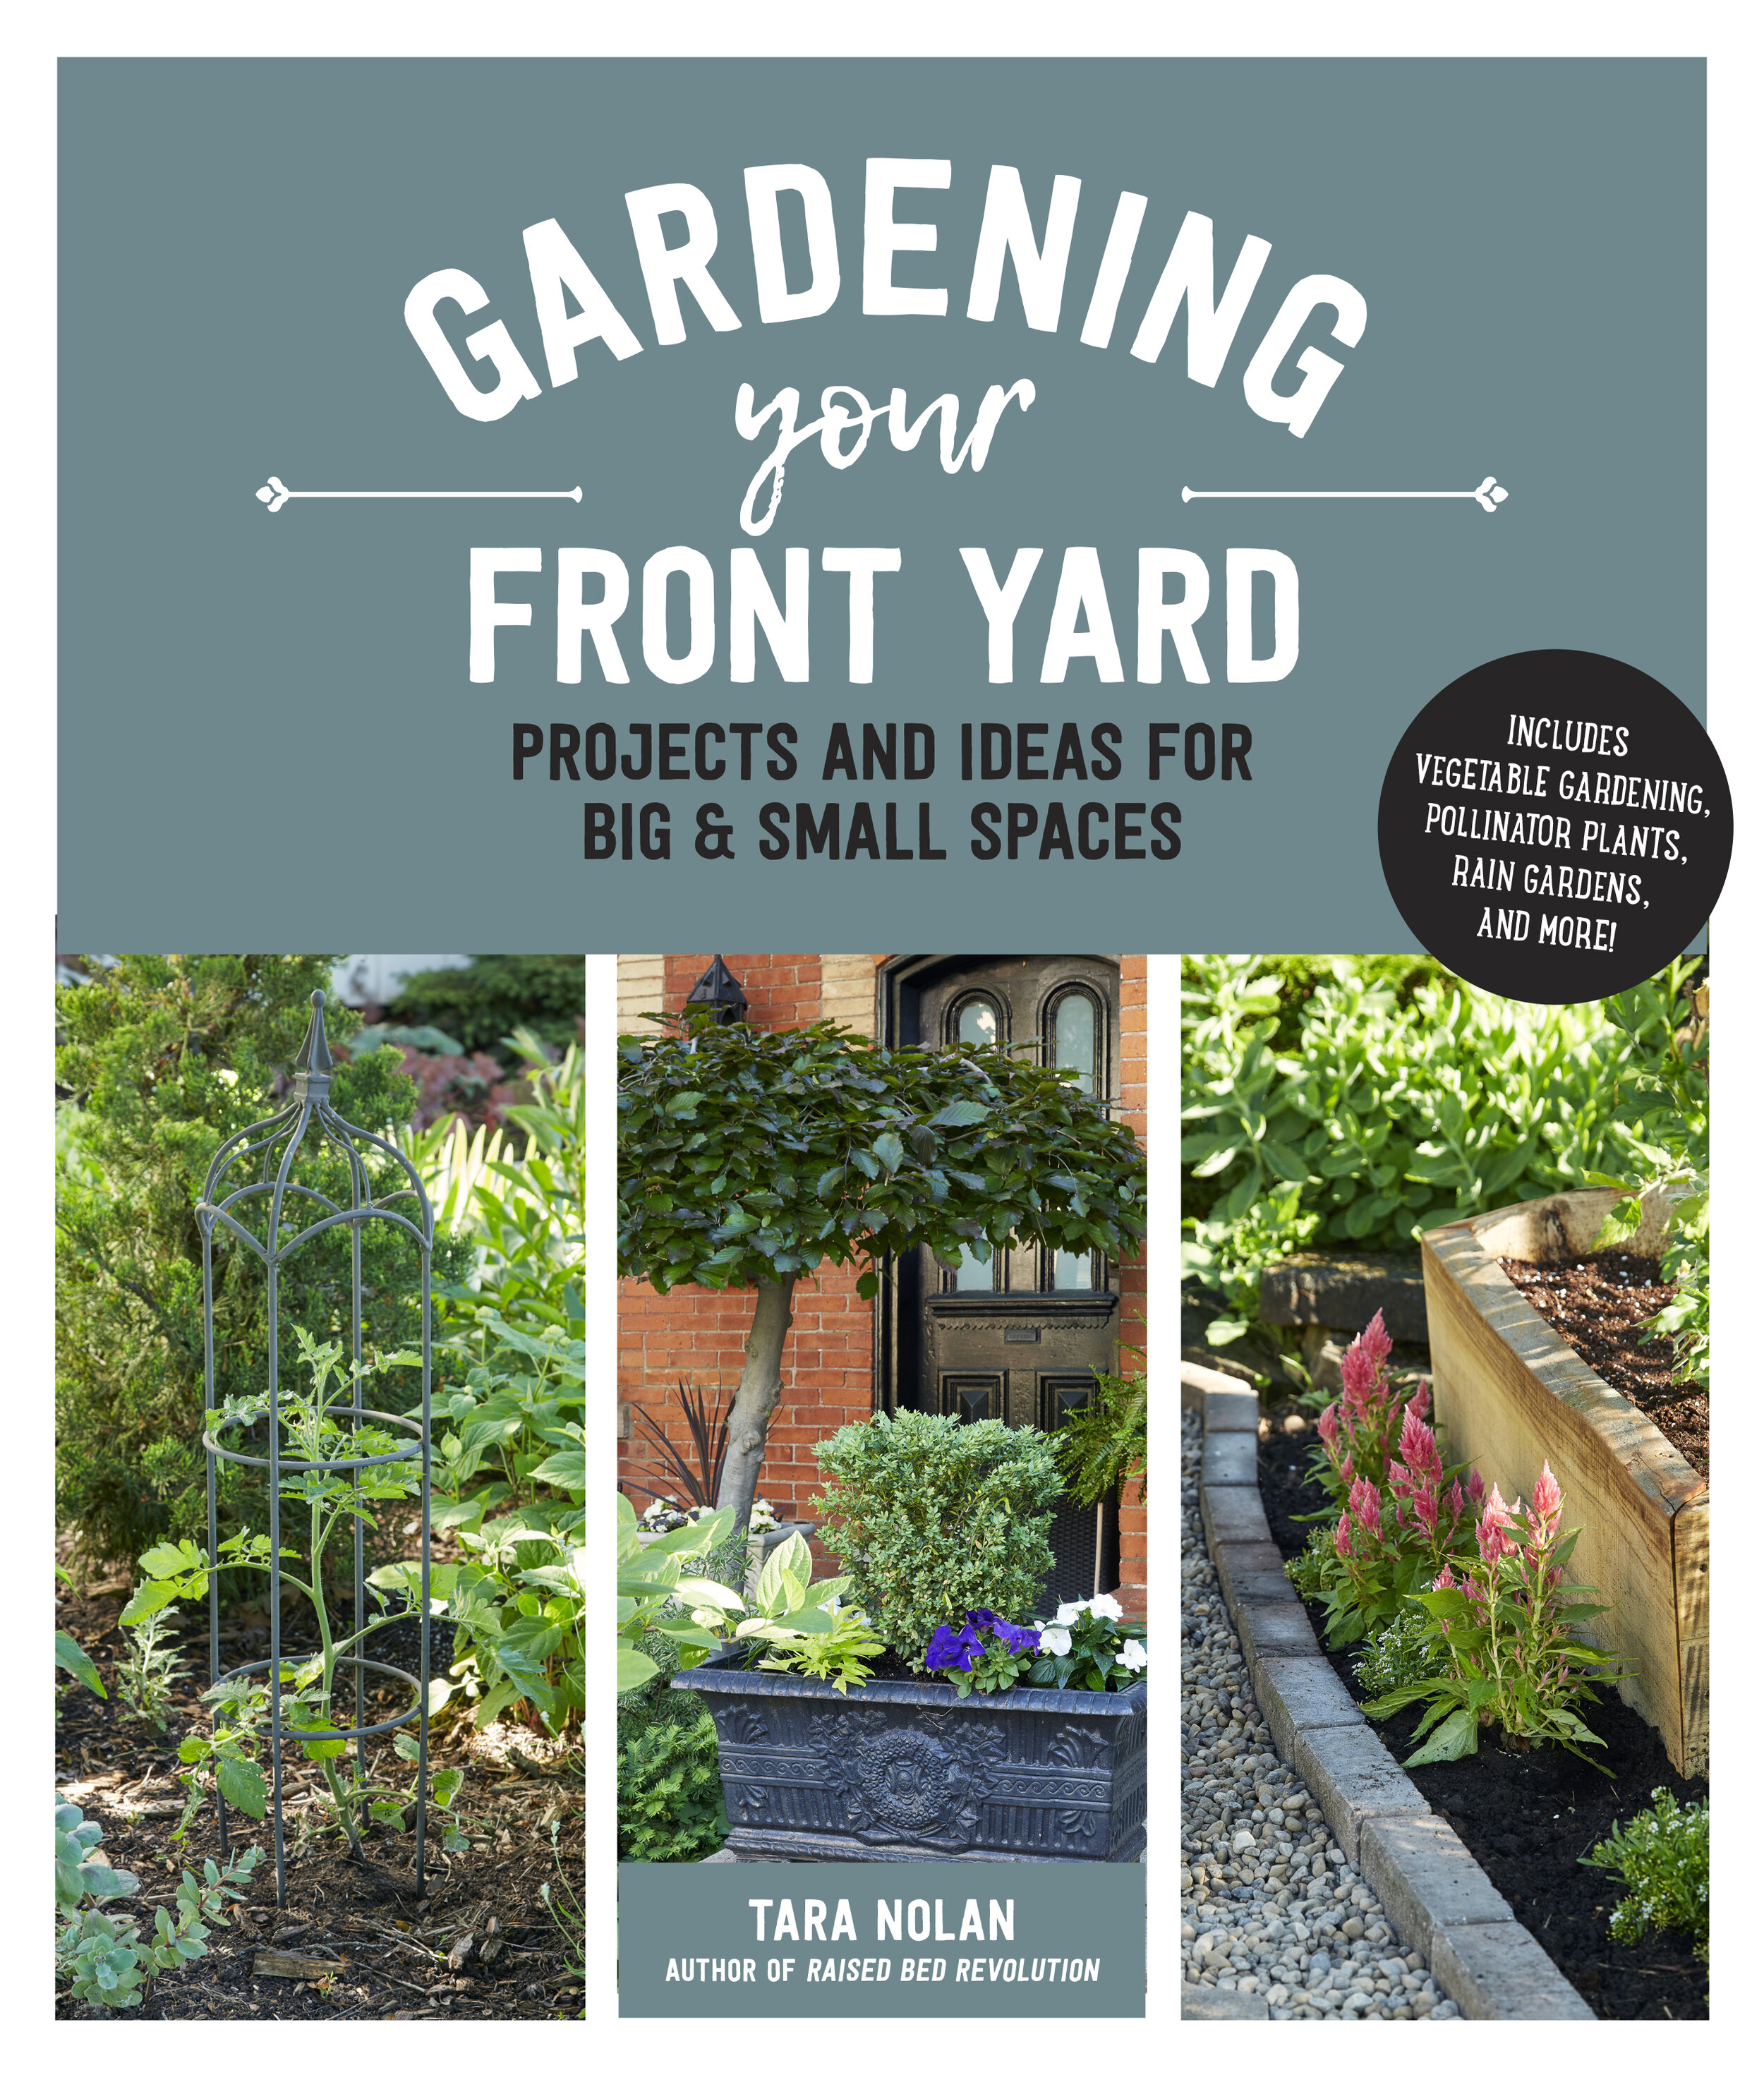 Gardening your Front Yard by Tara Nolan